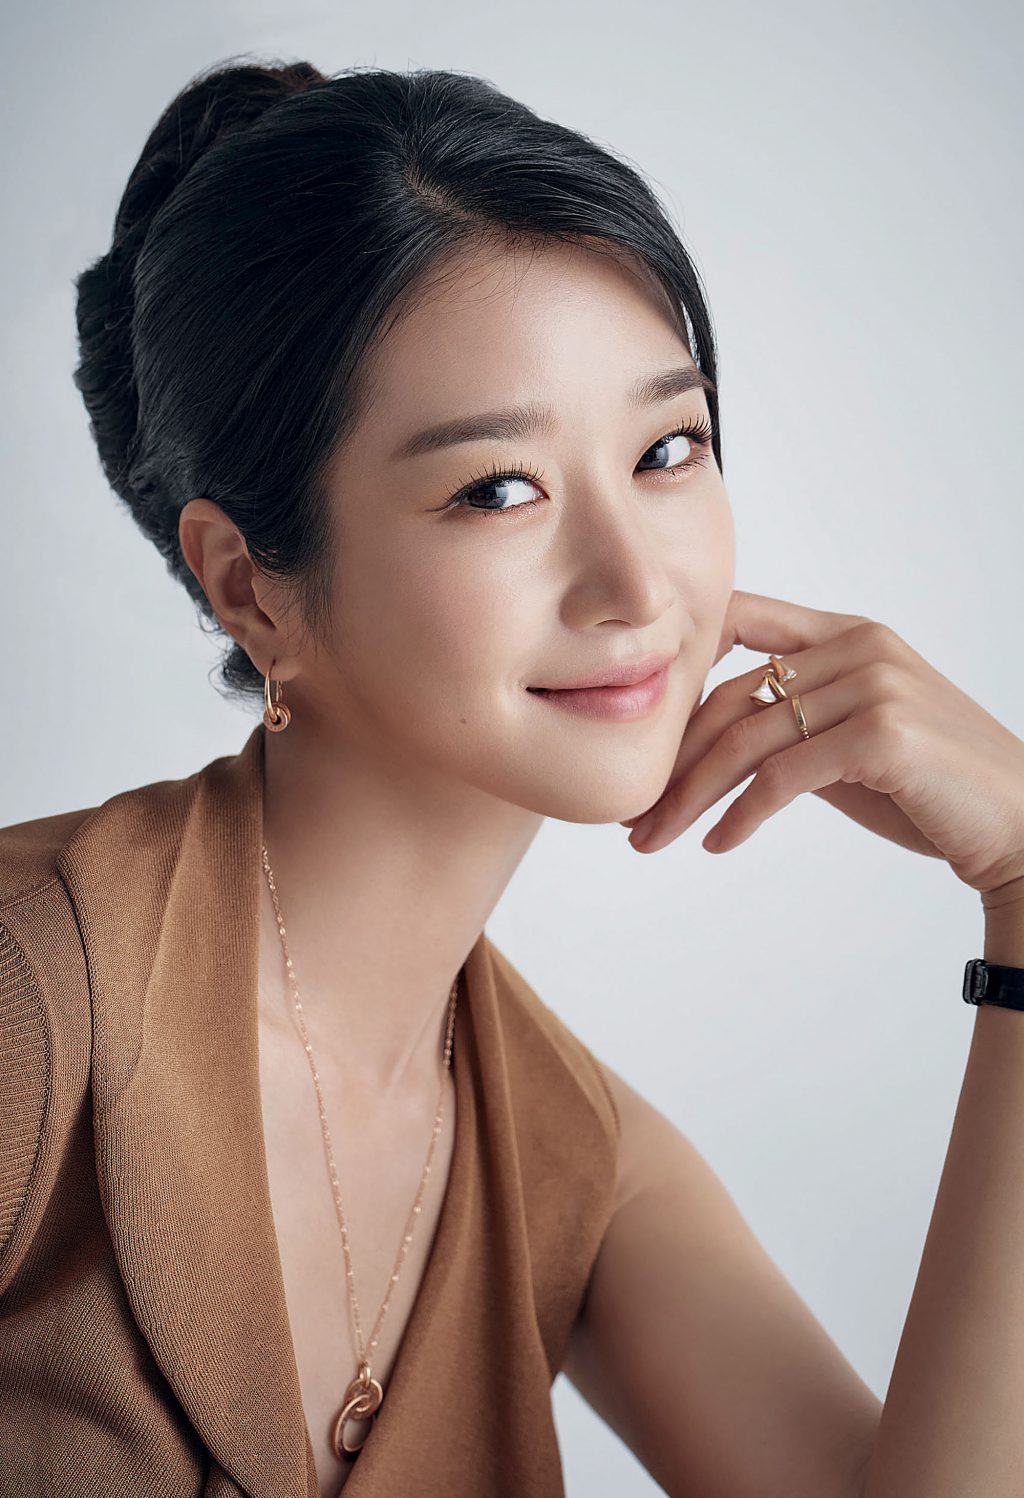 Mỹ nhân “Thiên Nga Bóng Đêm" Seo Ye Ji: Sở hữu vẻ đẹp sắc sảo ở tuổi U30, từng khiến showbiz Hàn xôn xao với ồn ào cùng bạn trai cũ - Ảnh 5.